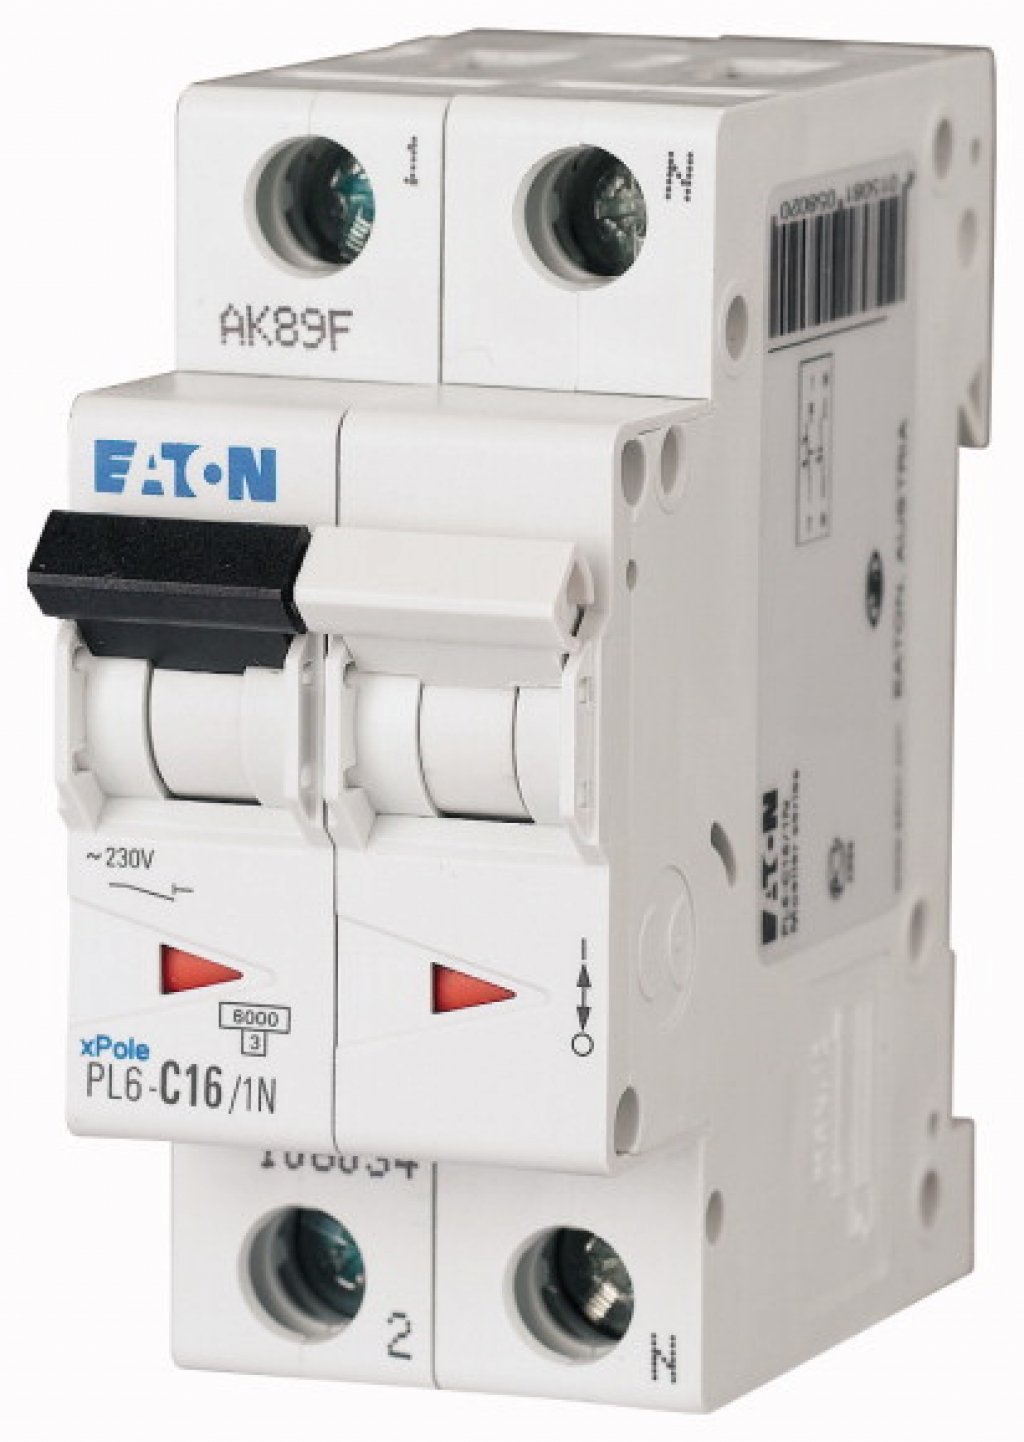 Автоматический выключатель c63. Eaton Xpole автоматический выключатель. Eaton pl6-c25/3. Eaton pl6-c20/4. Pl4-c20/1 автоматический выключатель 20а 1 полюс.